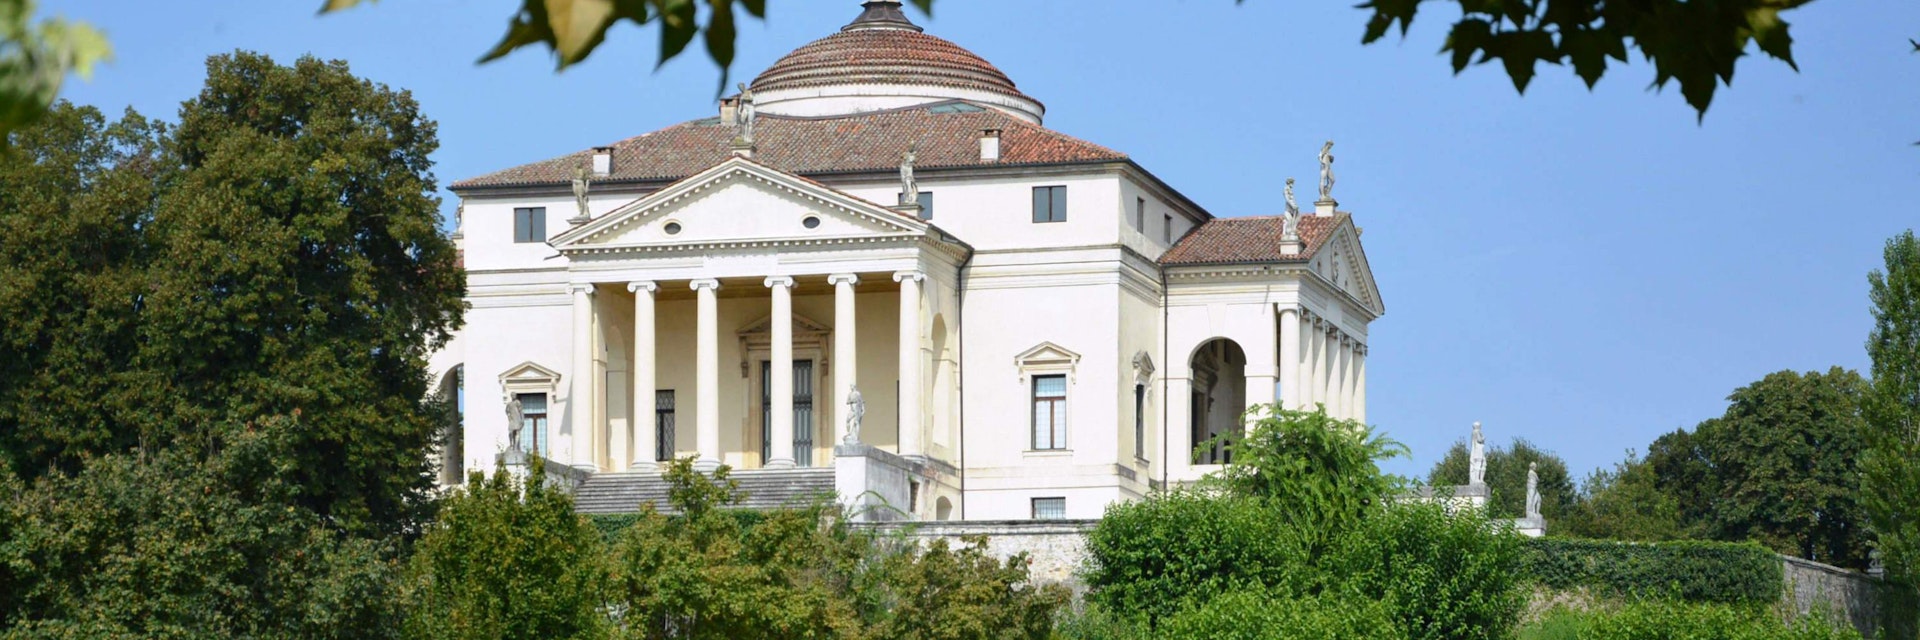 Villa Capra named La Rotonda, designed by Andrea Palladio architect in1591 at Vicenza in Italy.